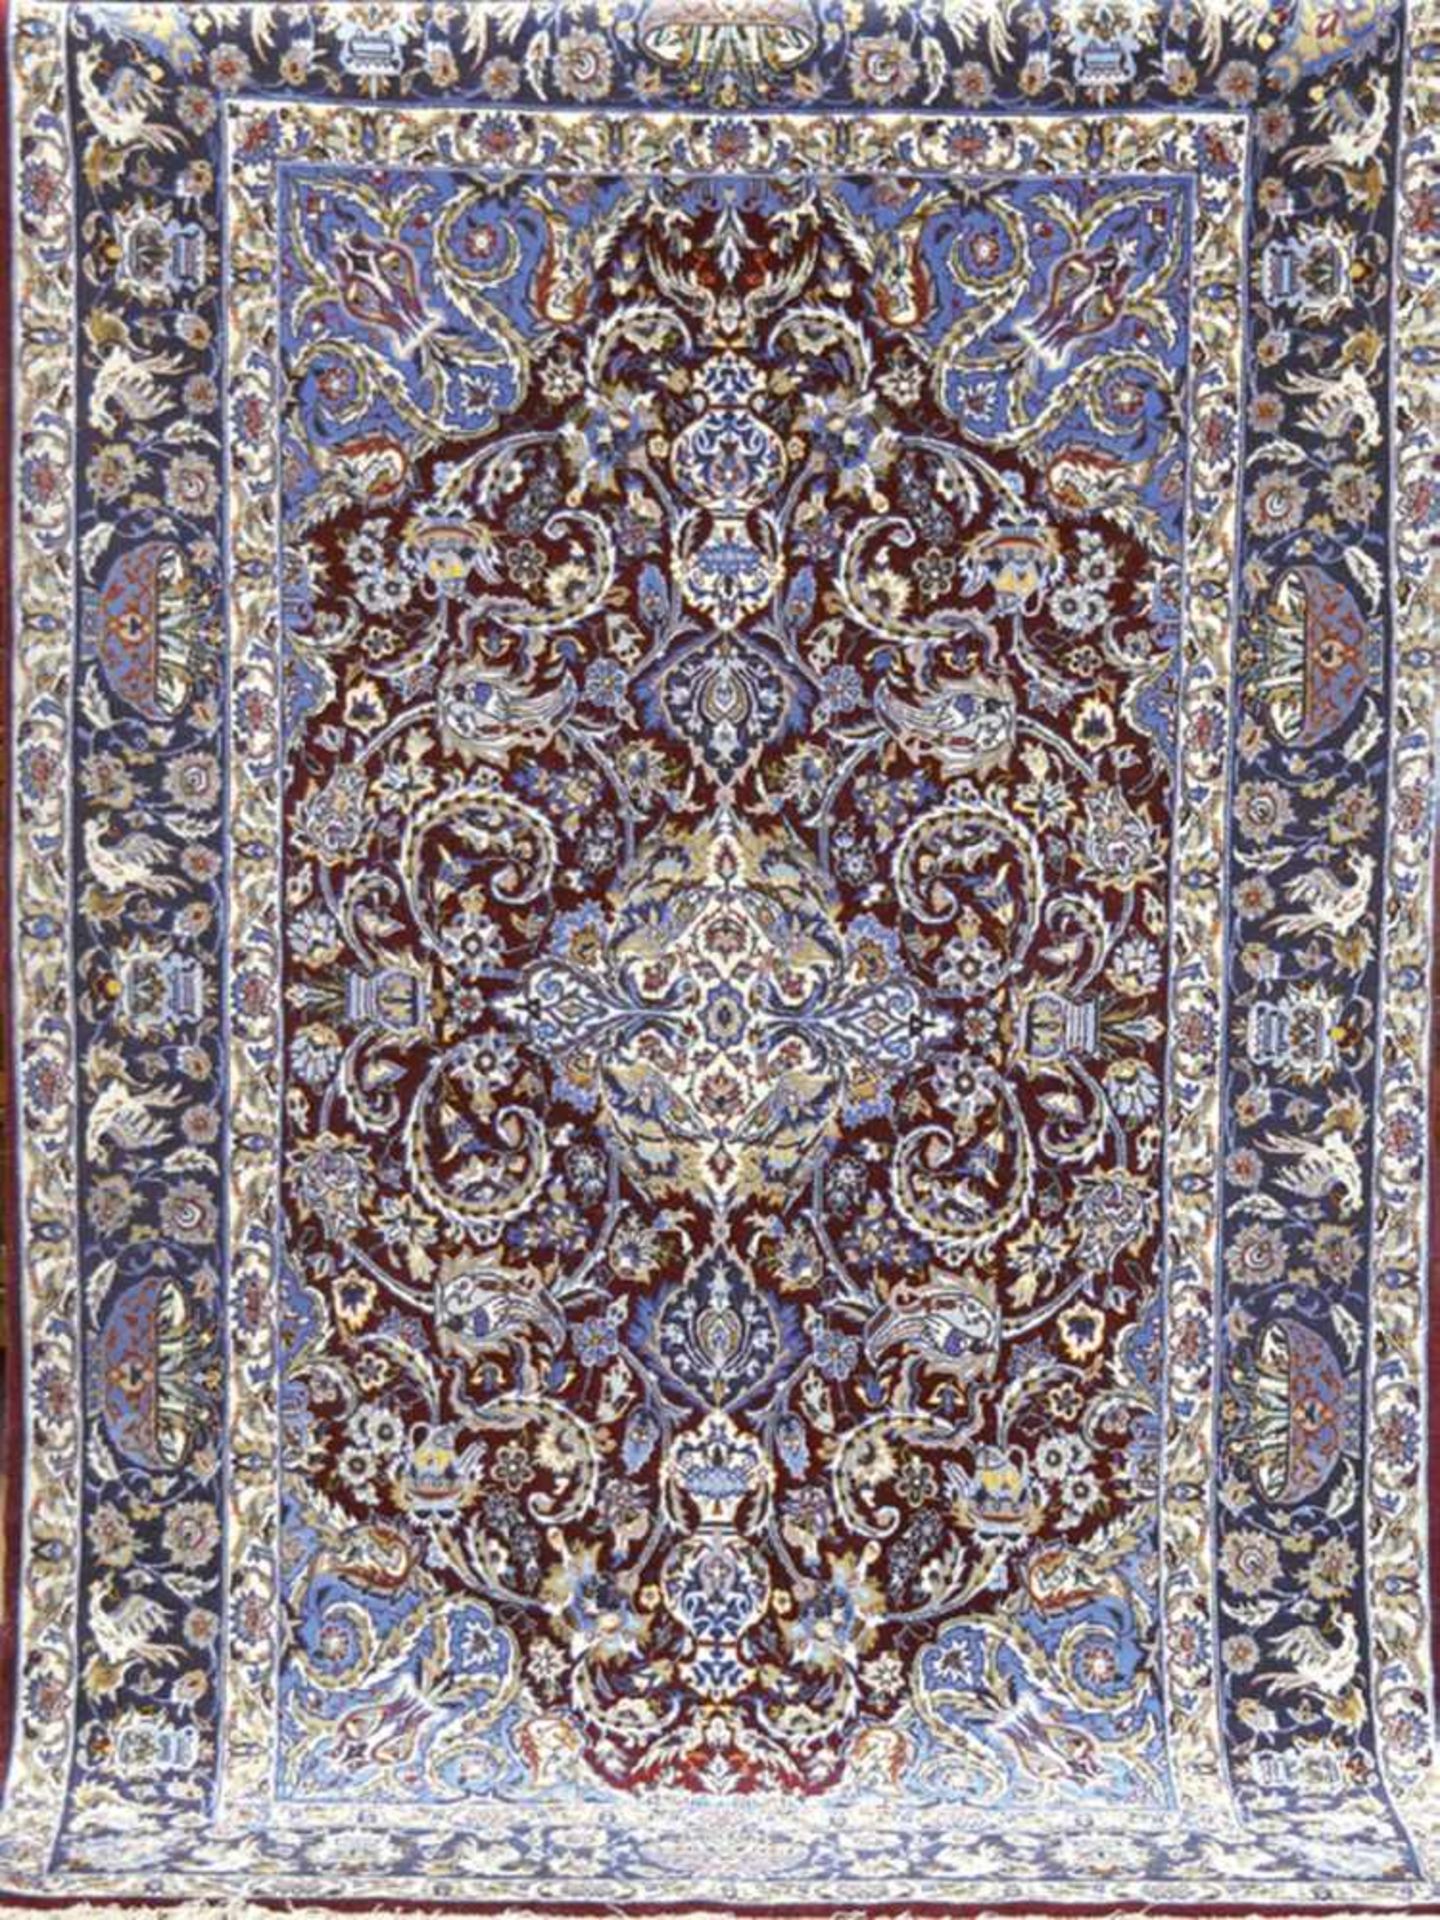 Teppich, dunkelgrundig mit zentralem Medaillon, mit Tier- u. Floralmotiven, guterZustand, 177x115